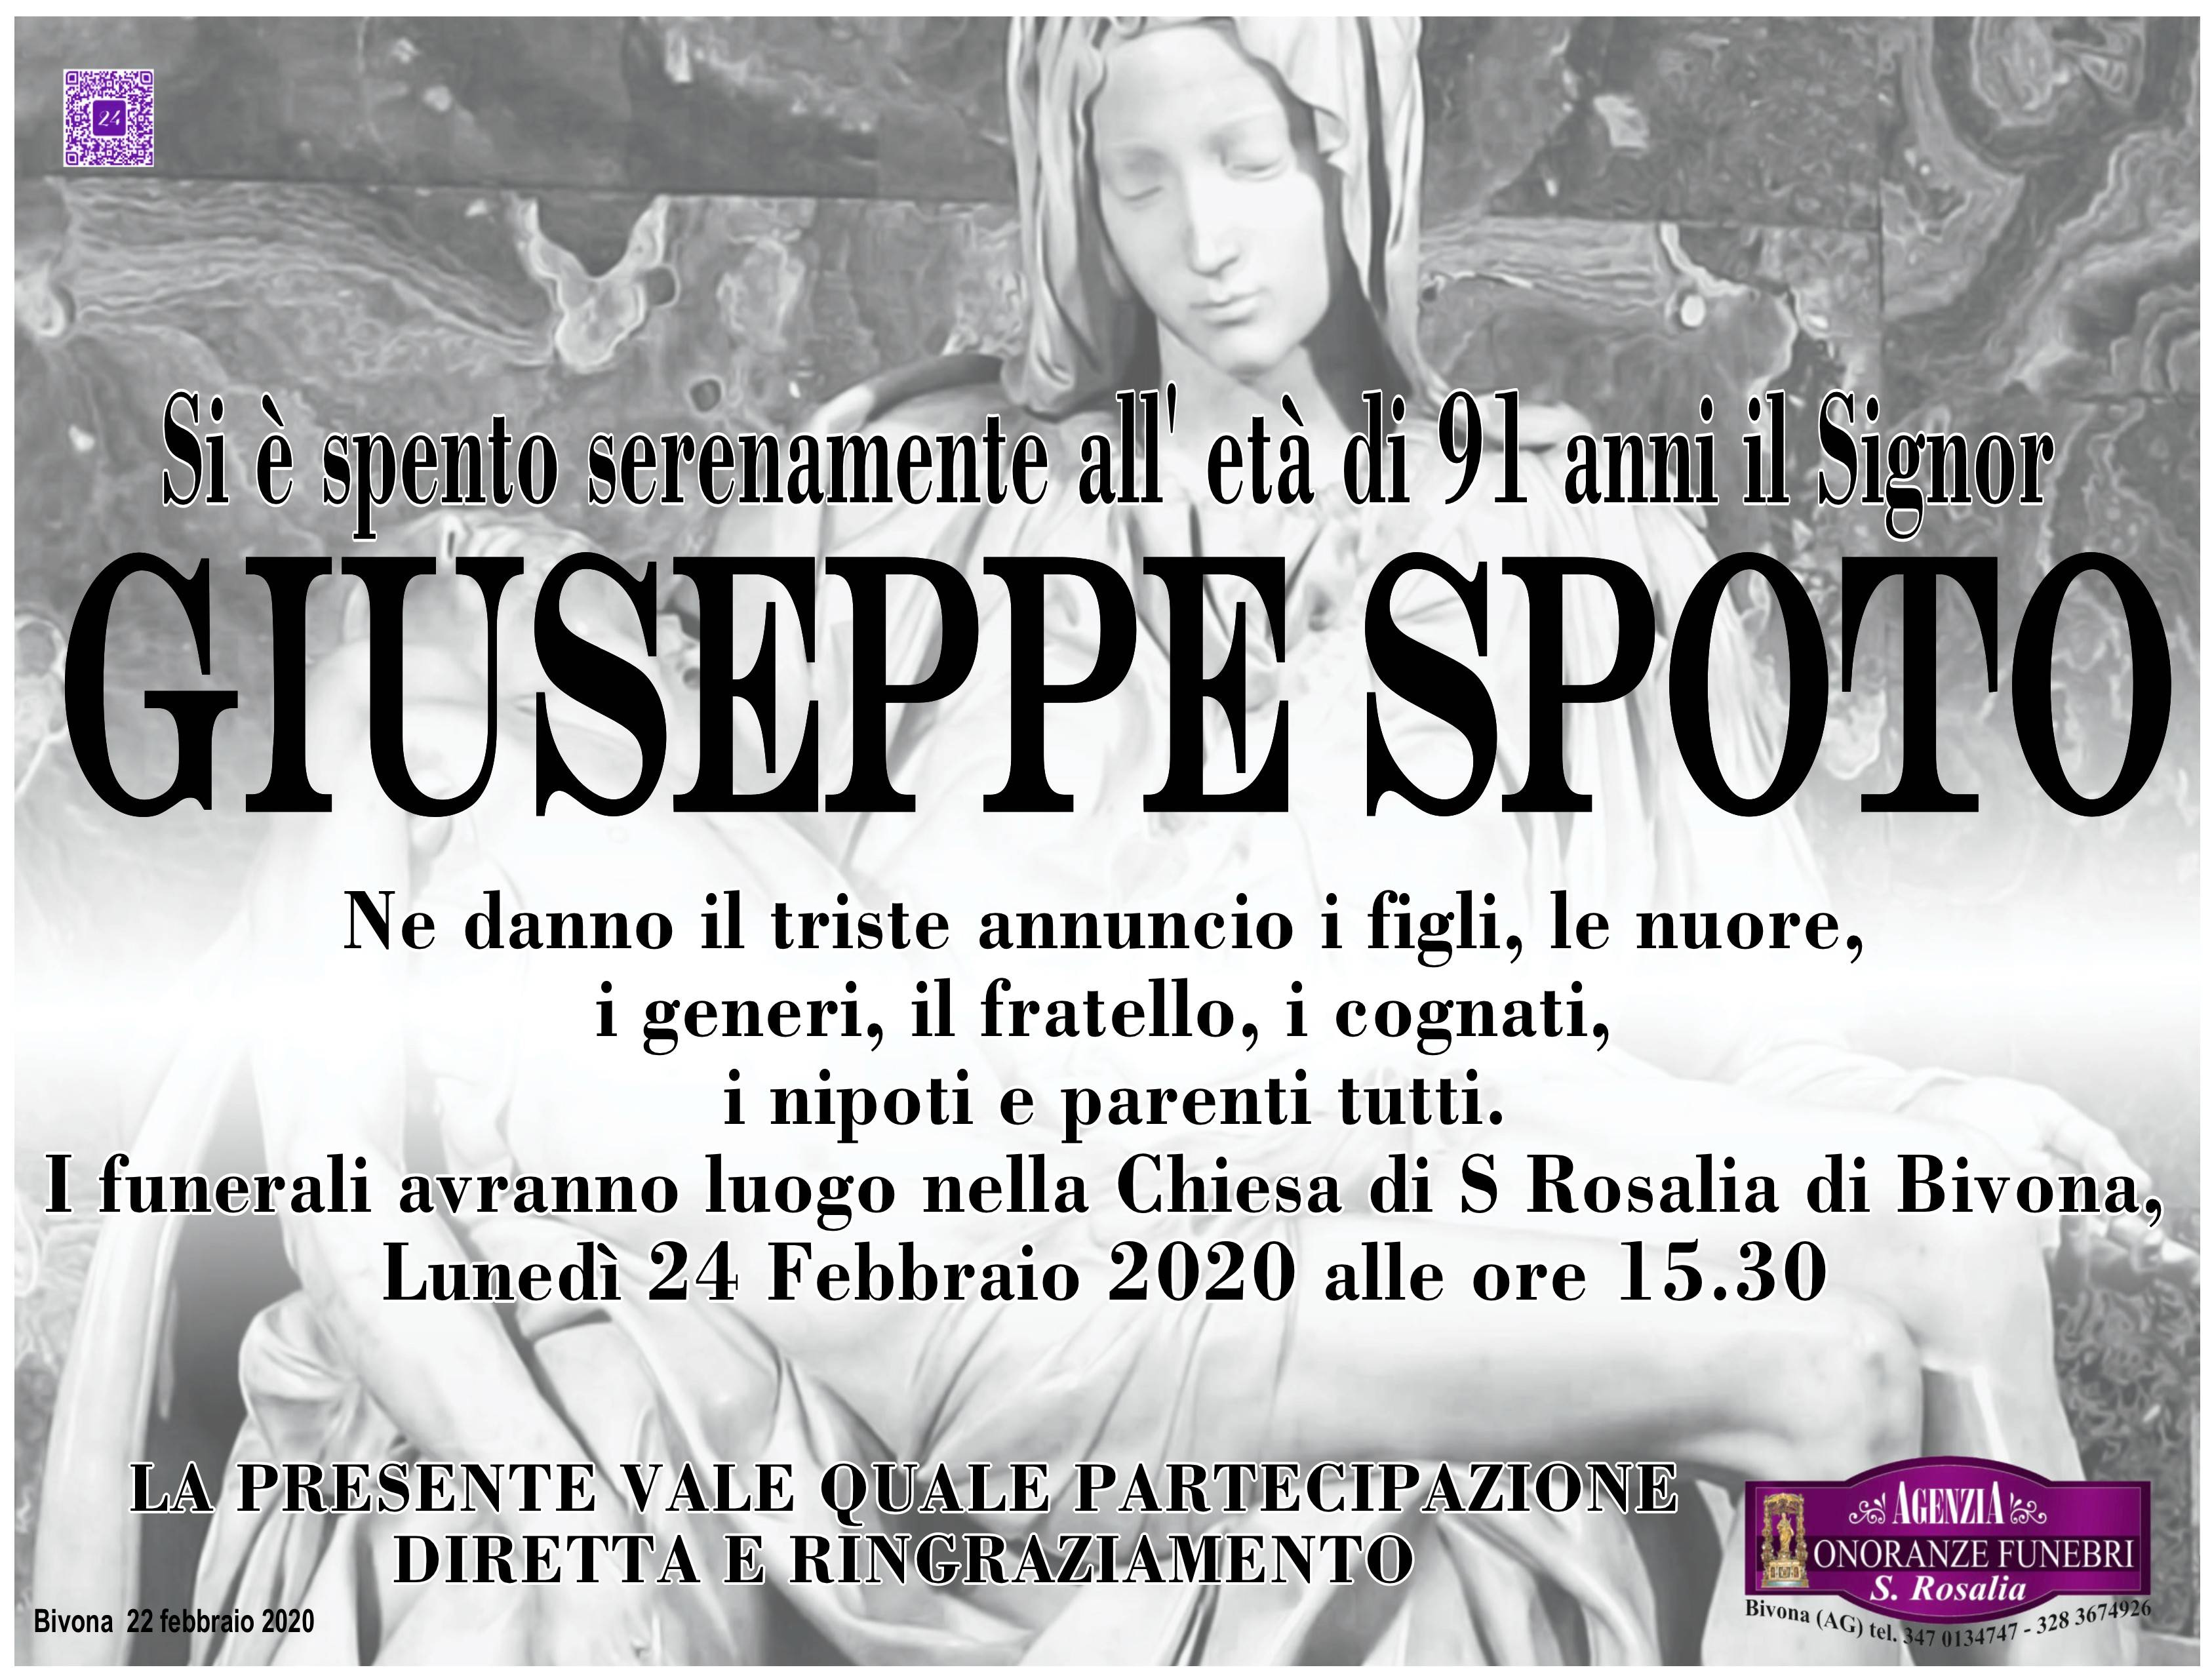 Giuseppe Spoto